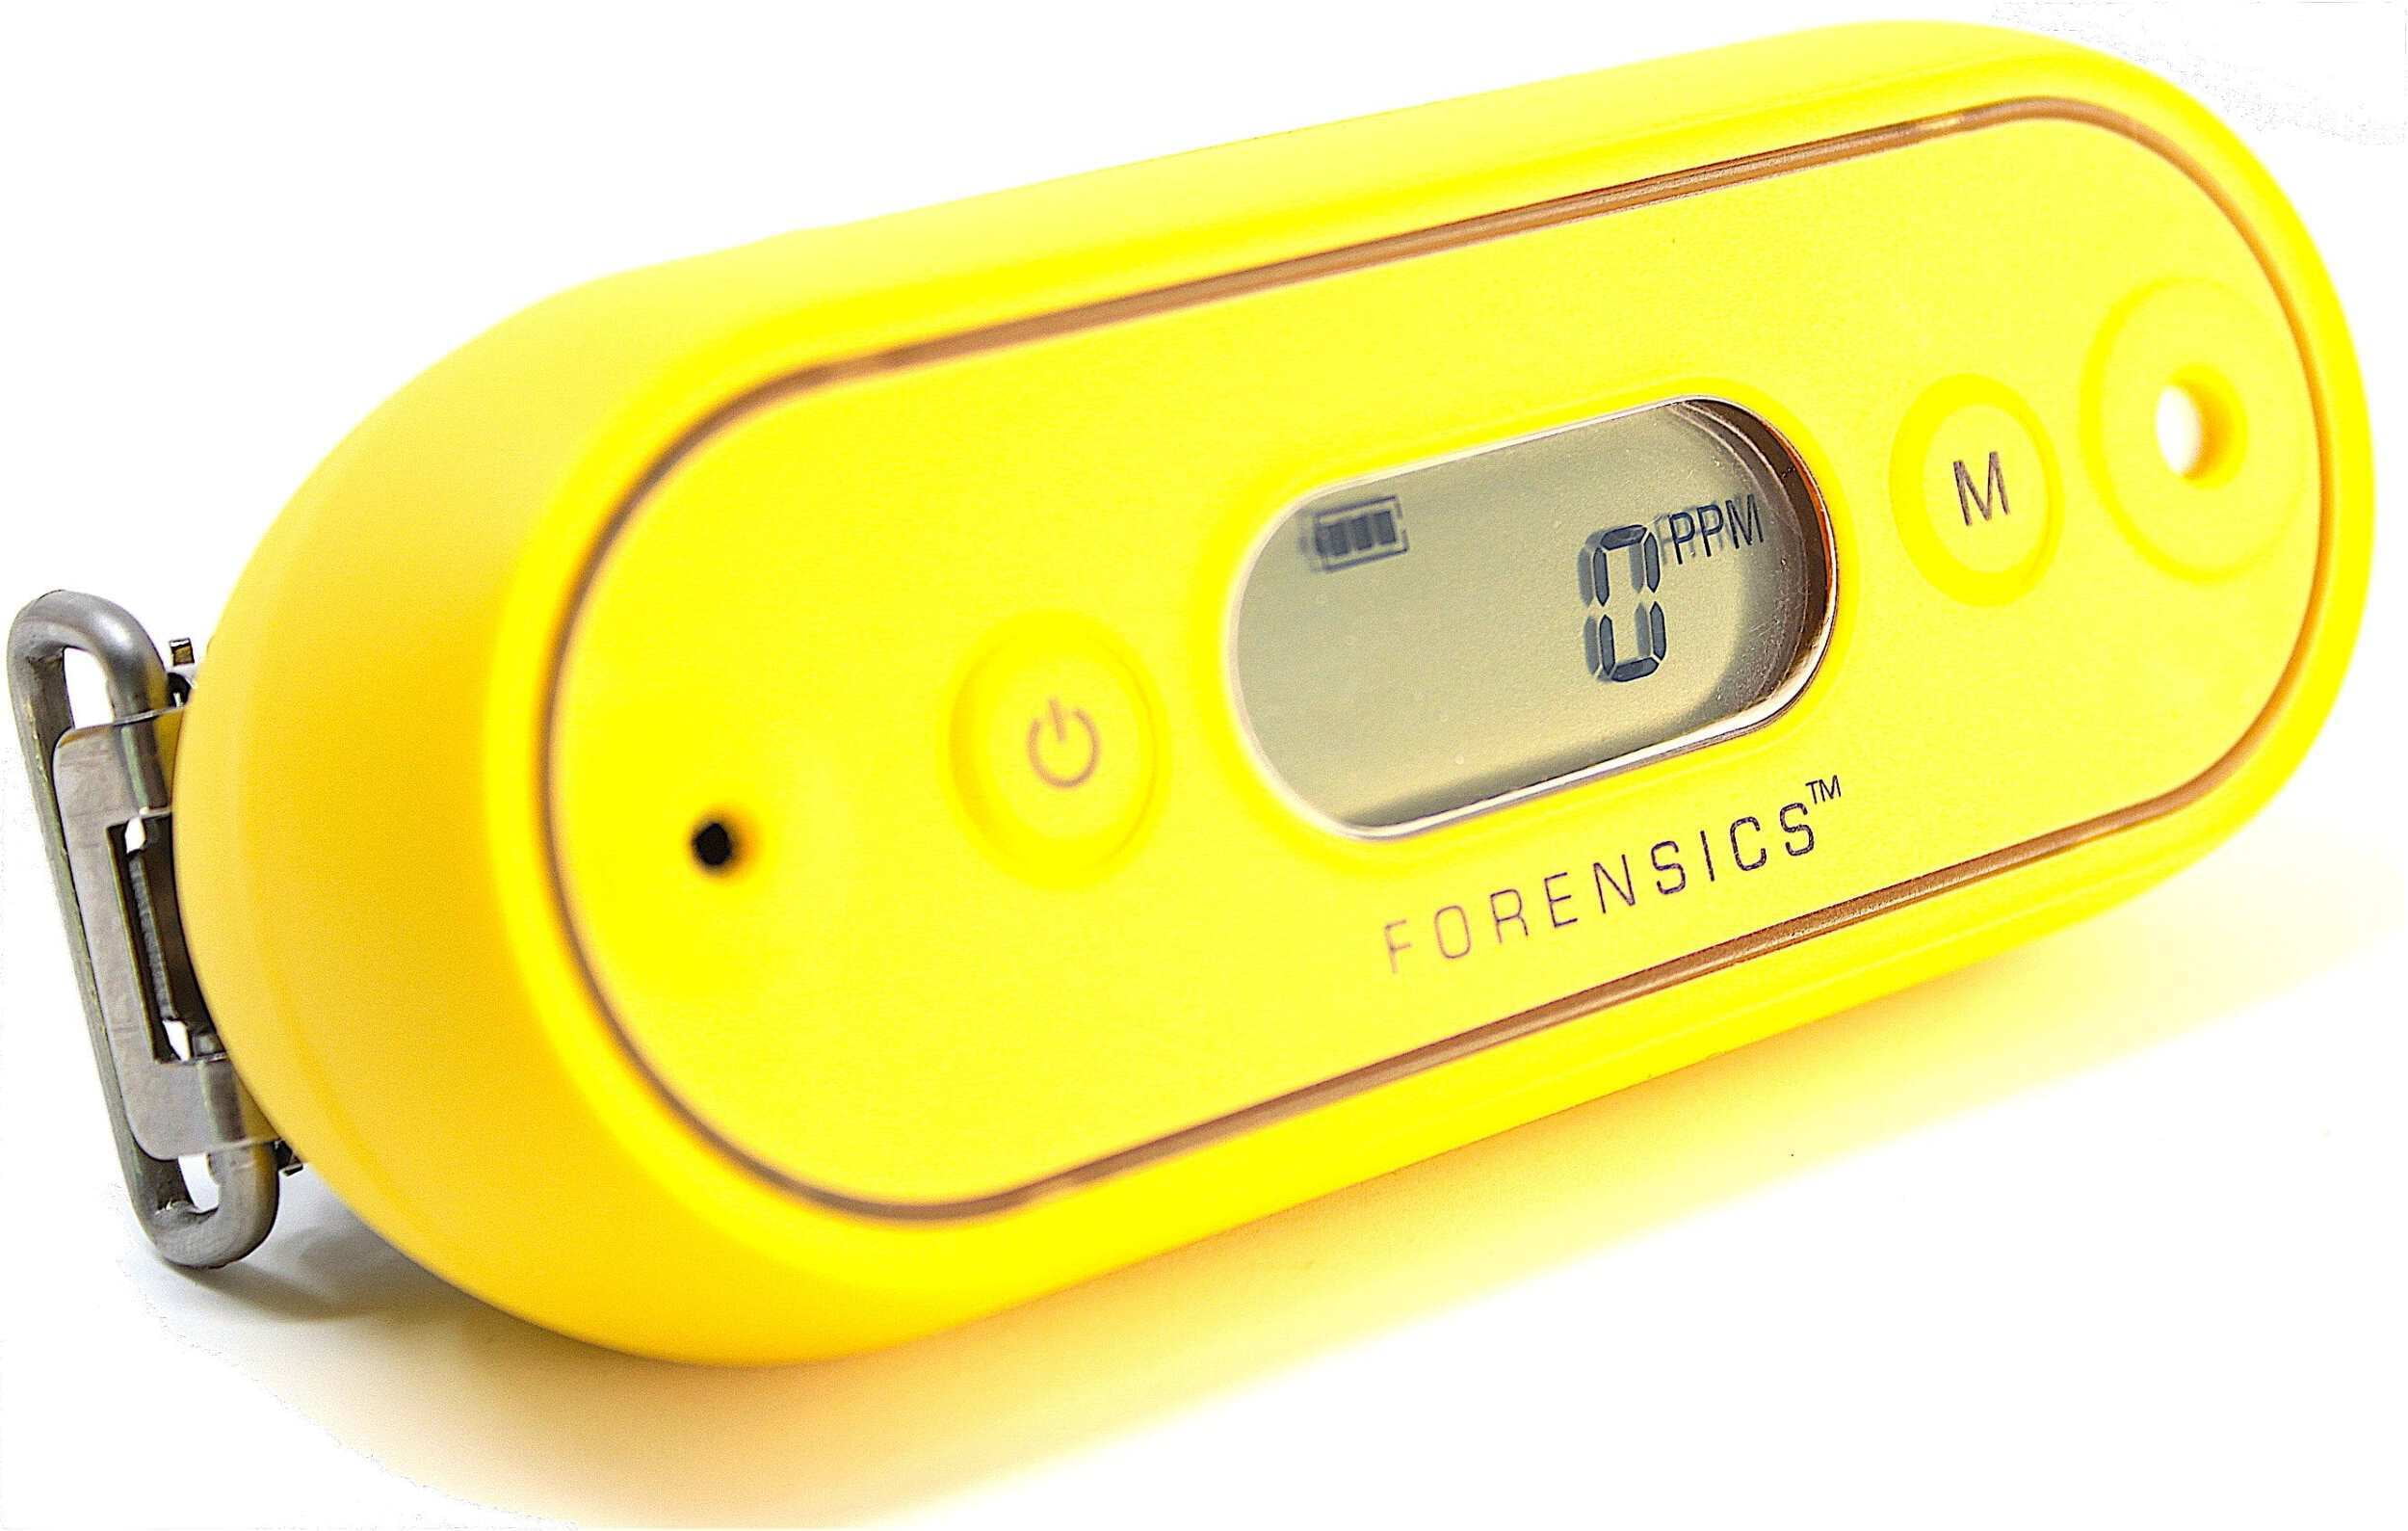 Forensics Carbon Monoxide Detector